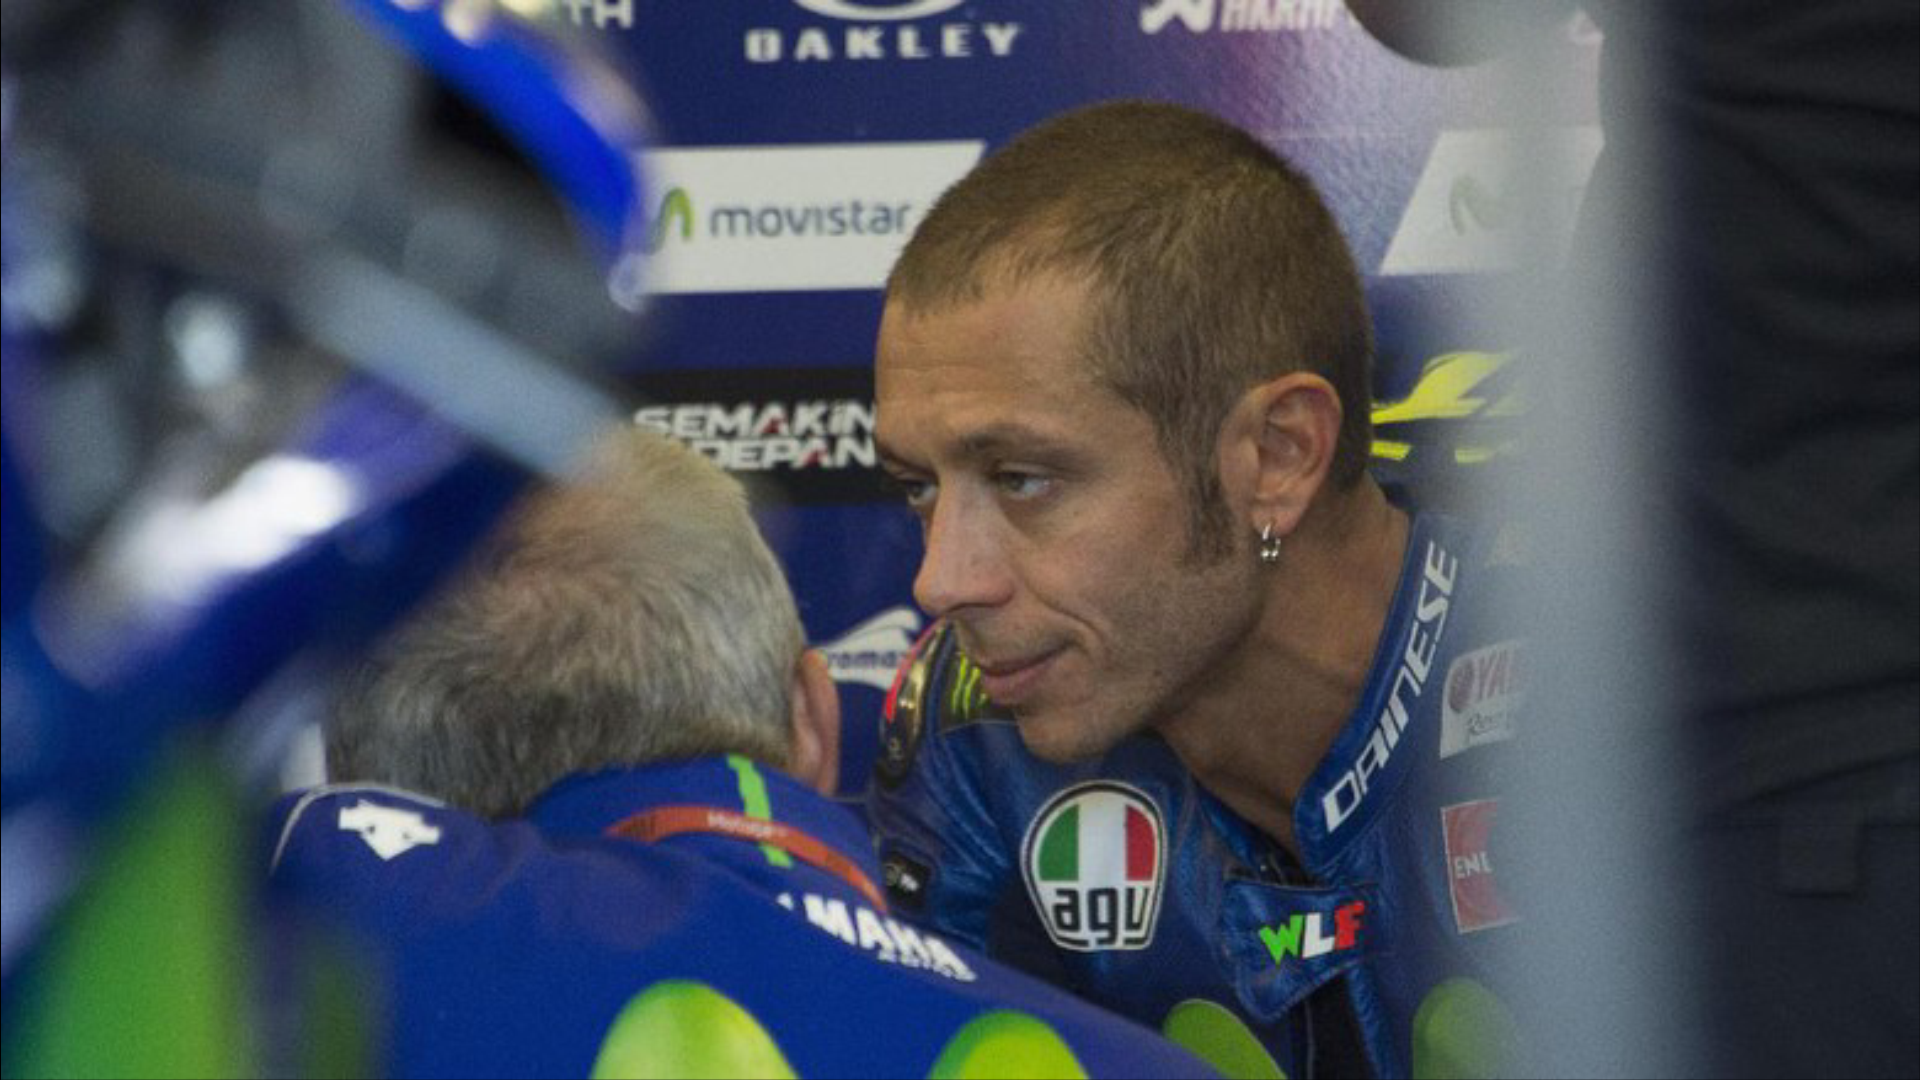 Rossi Sebut Masih Ada Peluang Kecil untuk Dovizioso